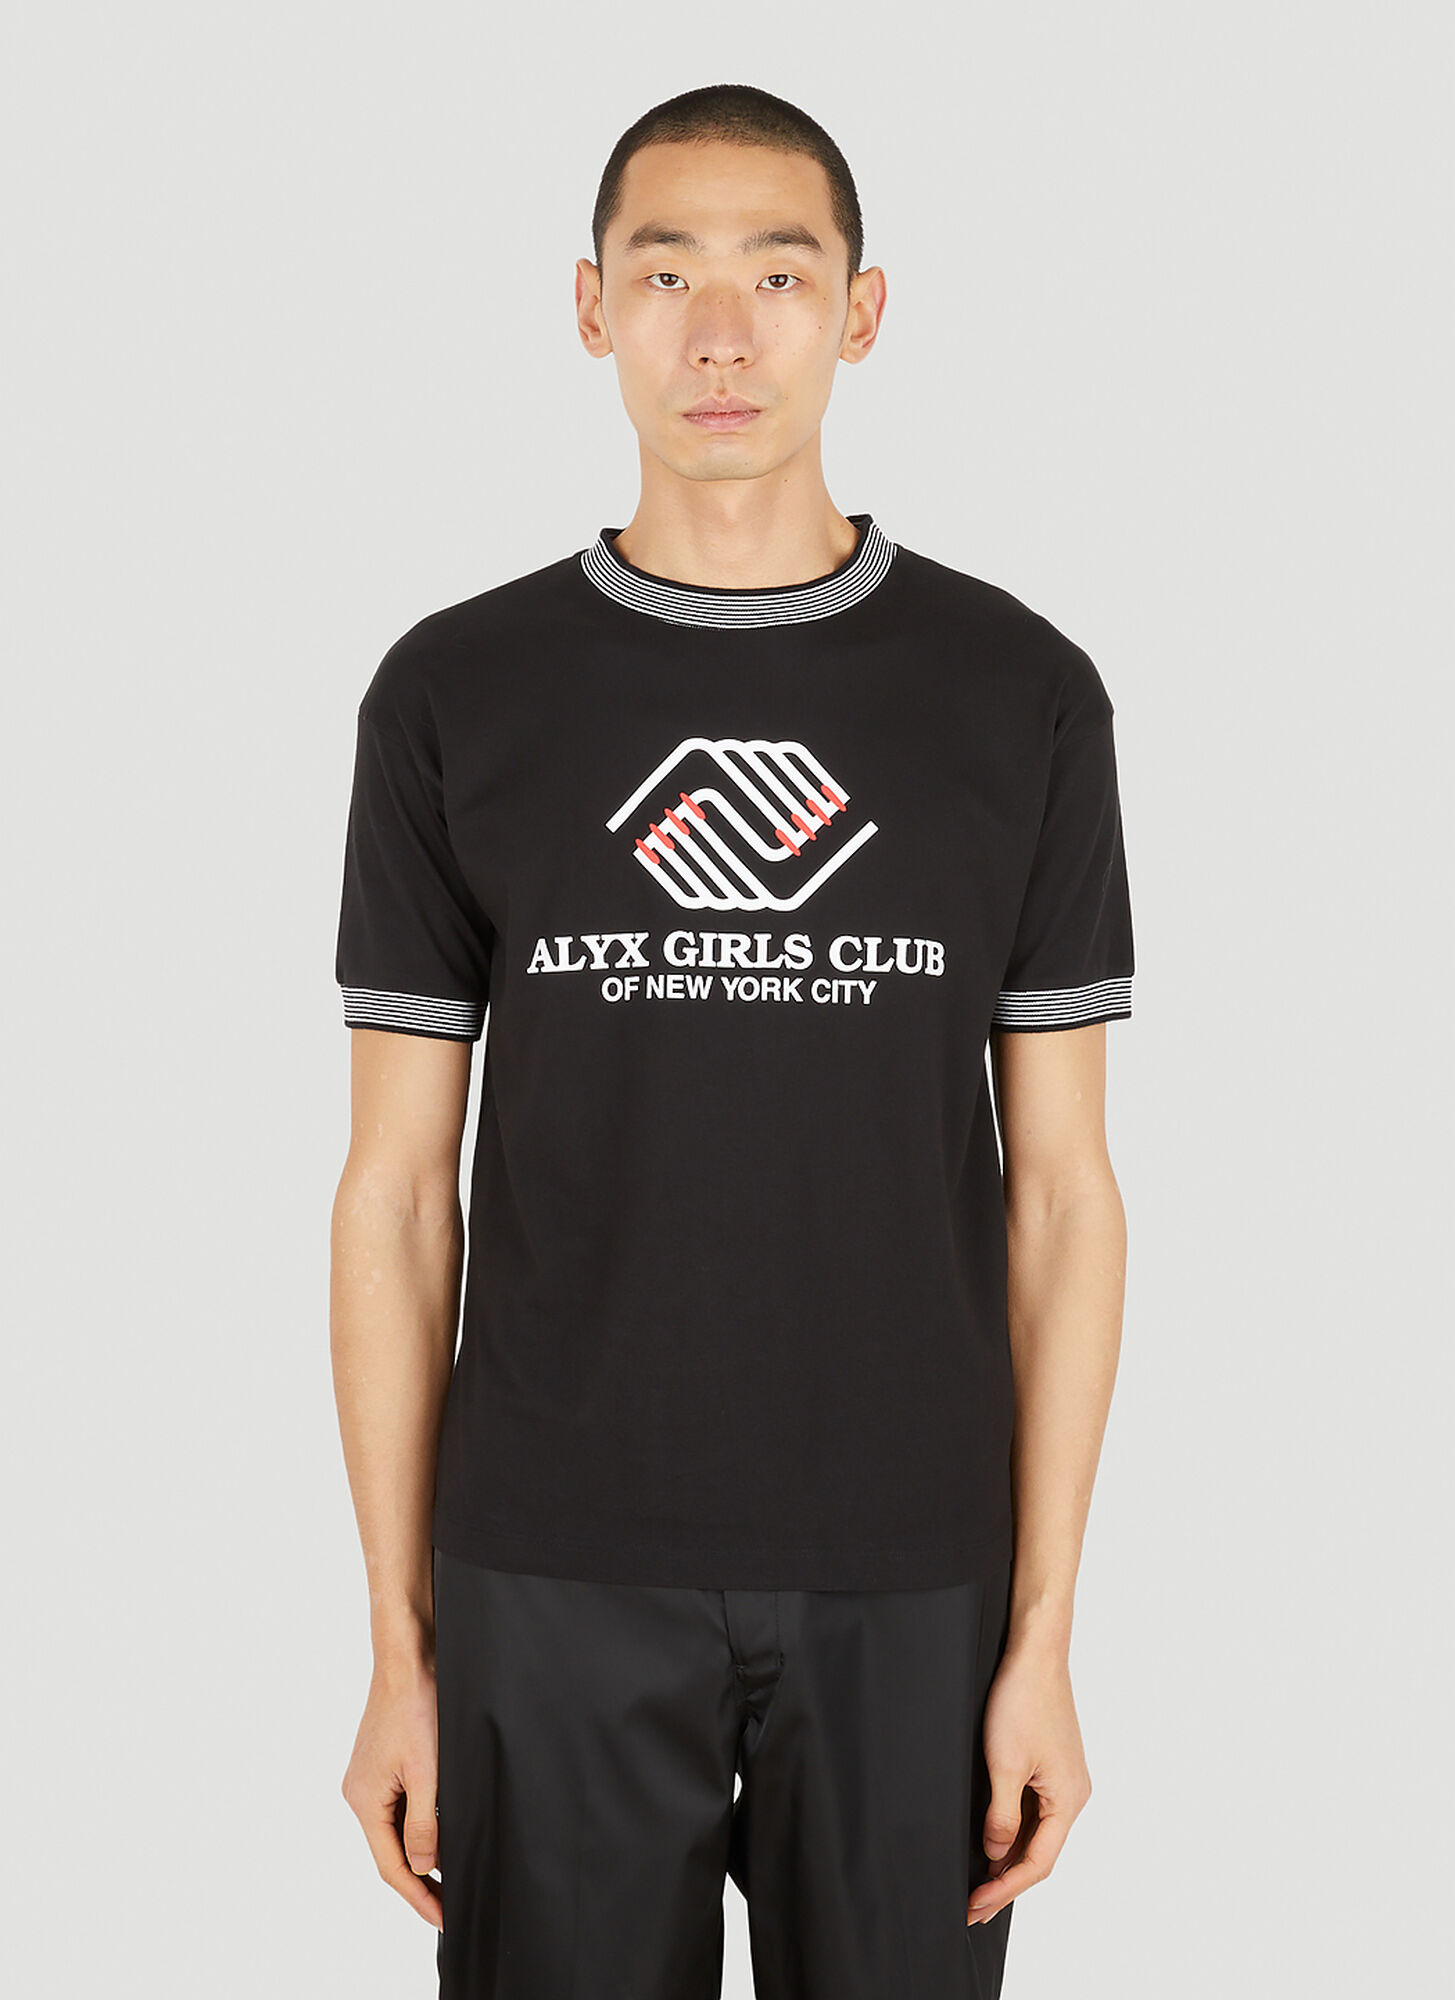 Alyx Girls Club T-shirt In Black